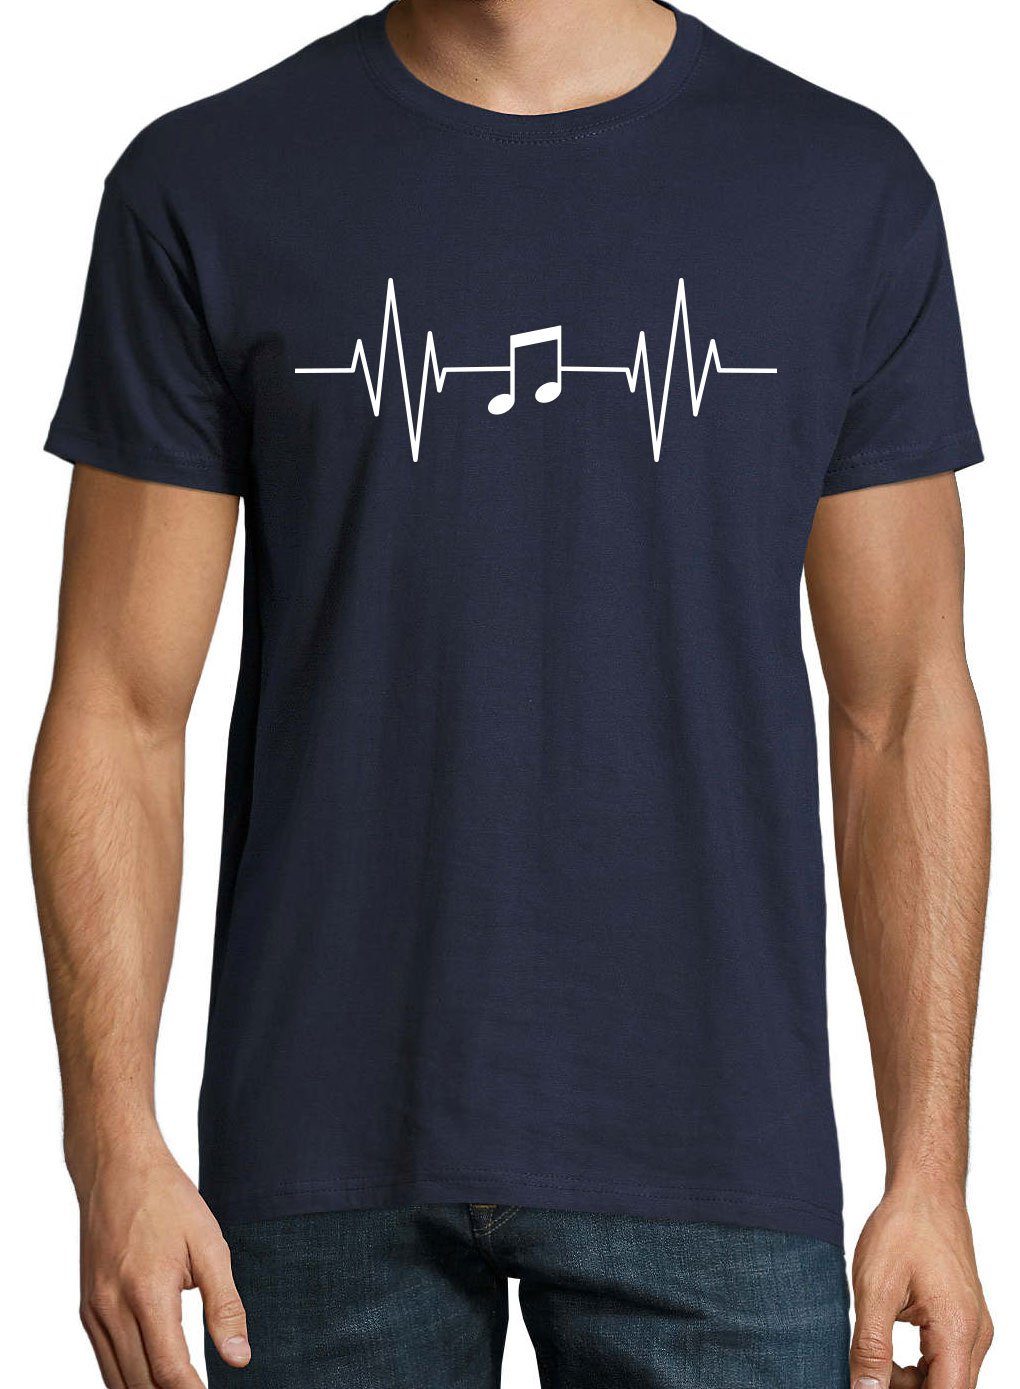 mit Heartbeat Musik Frontprint Designz Navy Note Shirt Youth T-Shirt Music Herren